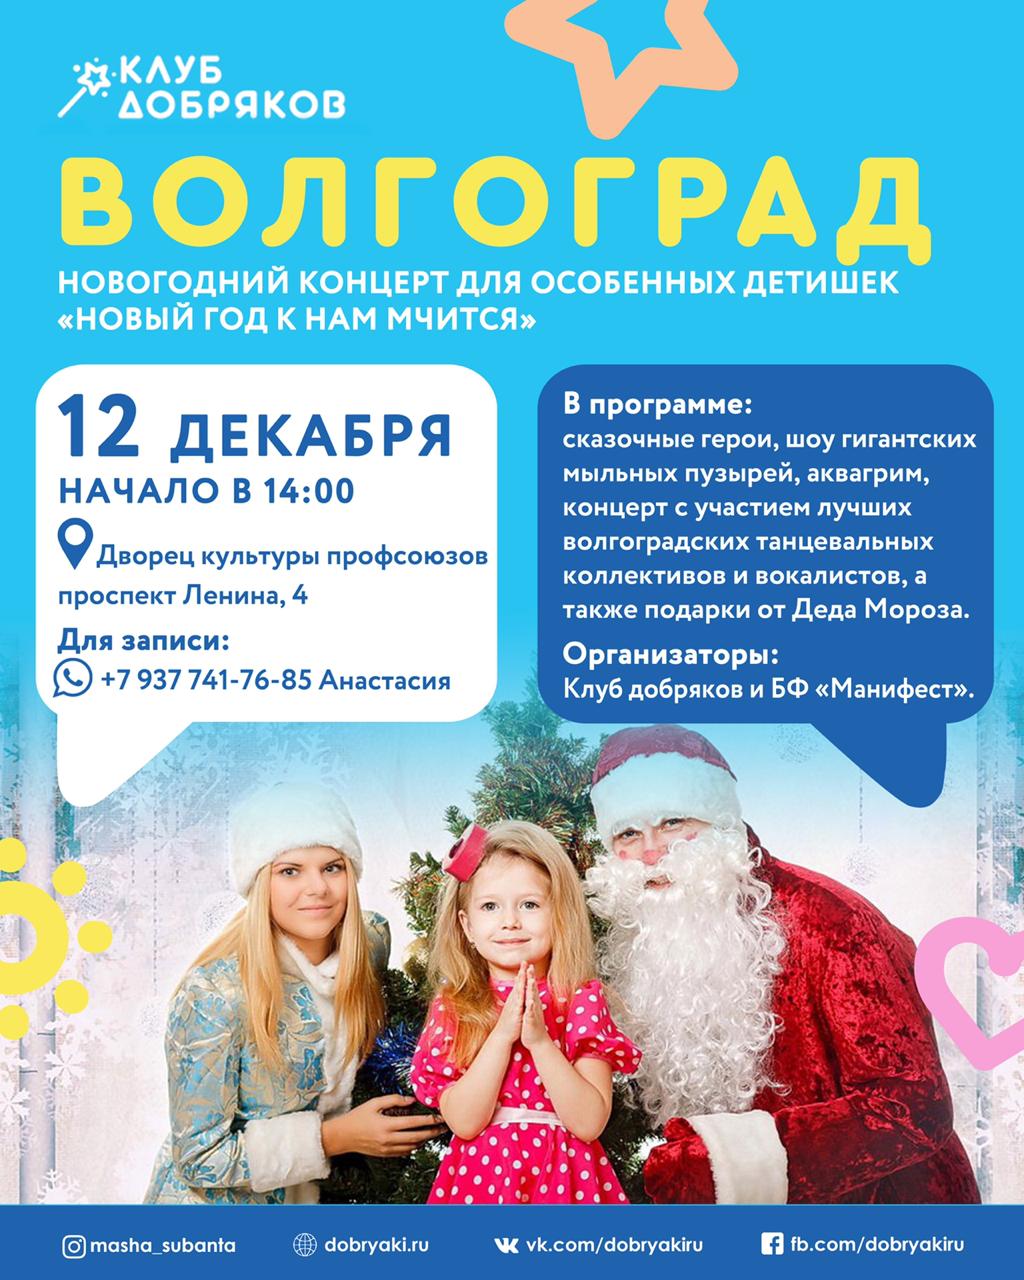 В Волгограде состоится новогодний концерт для особенных деток